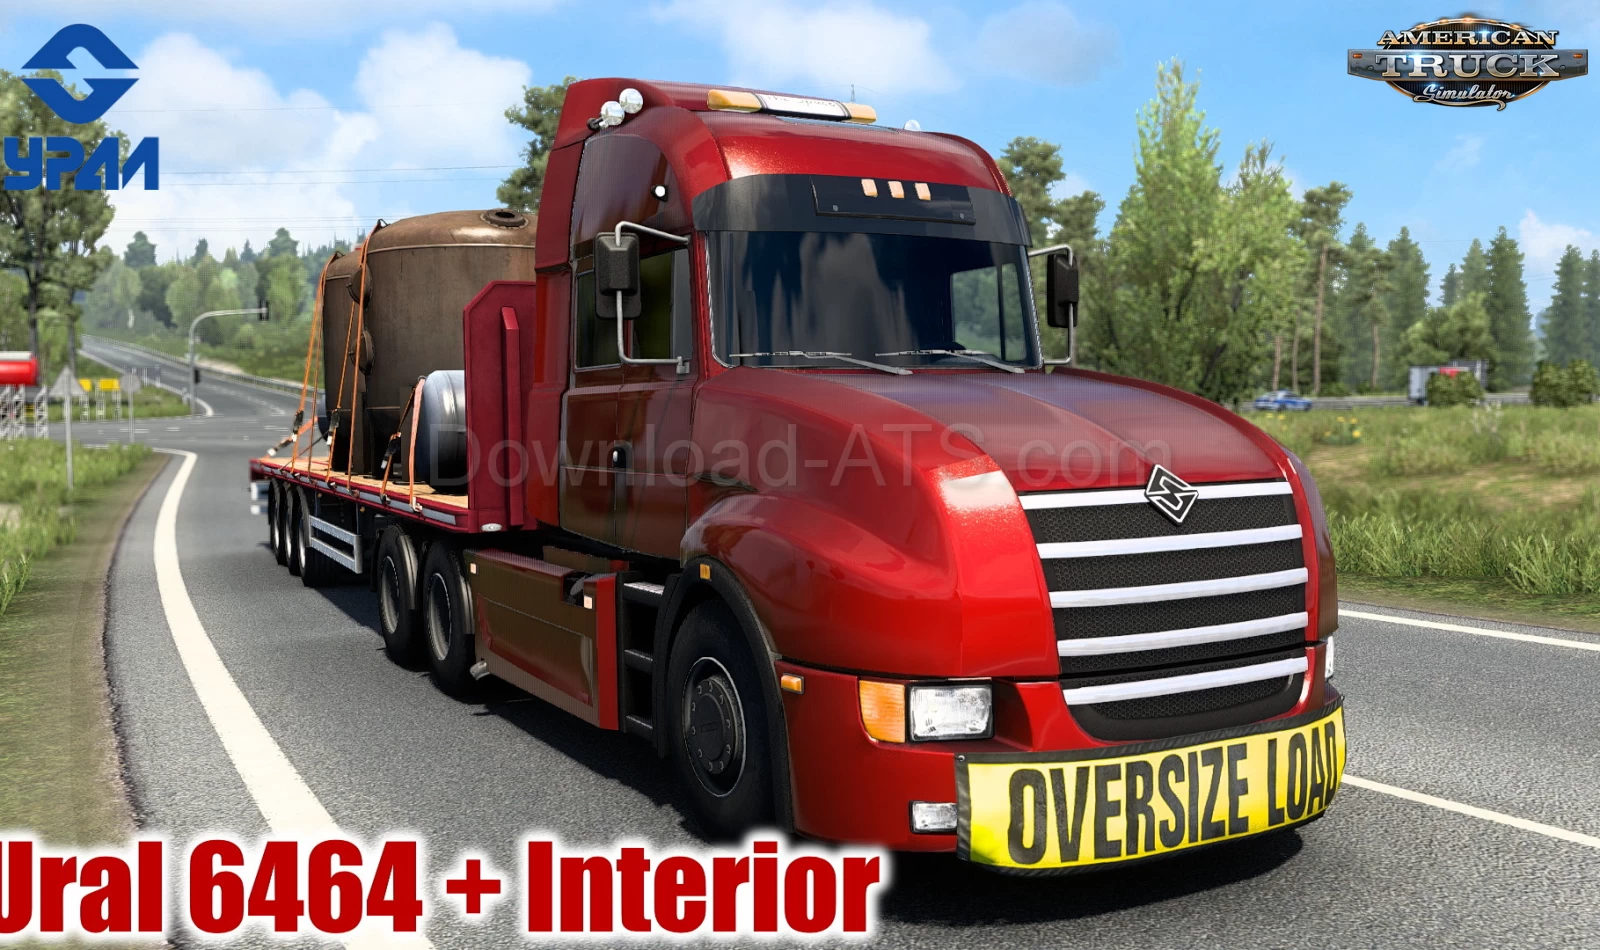 Ural 6464 + Interior v1.6 (1.48.x) for ATS